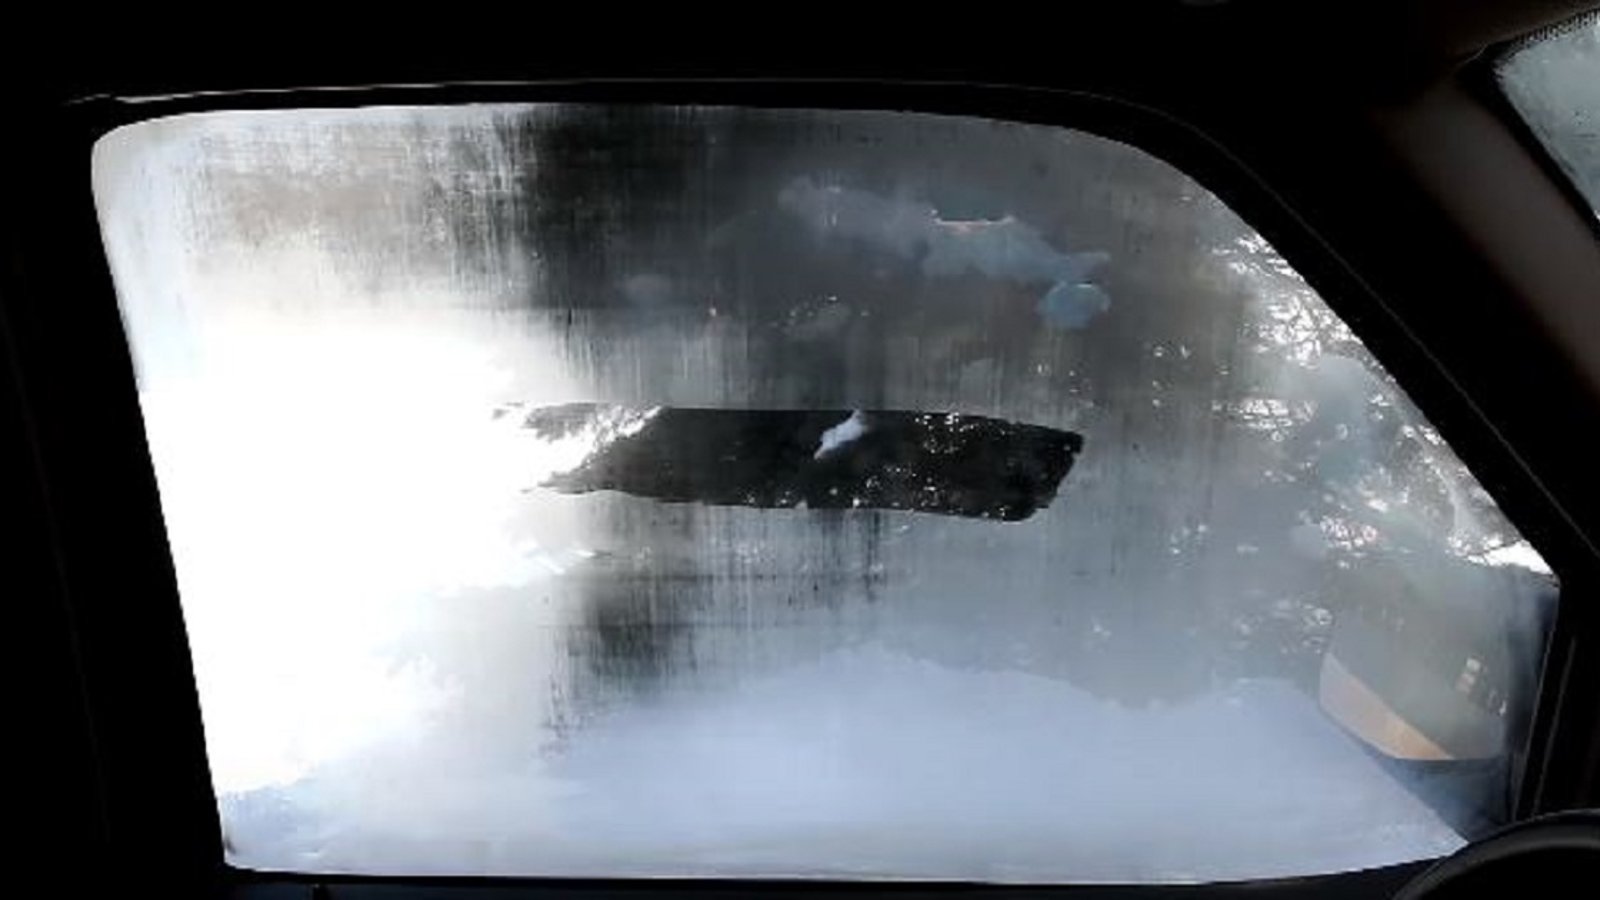 Comment empêcher la buée dans les vitres de votre voiture cet hiver